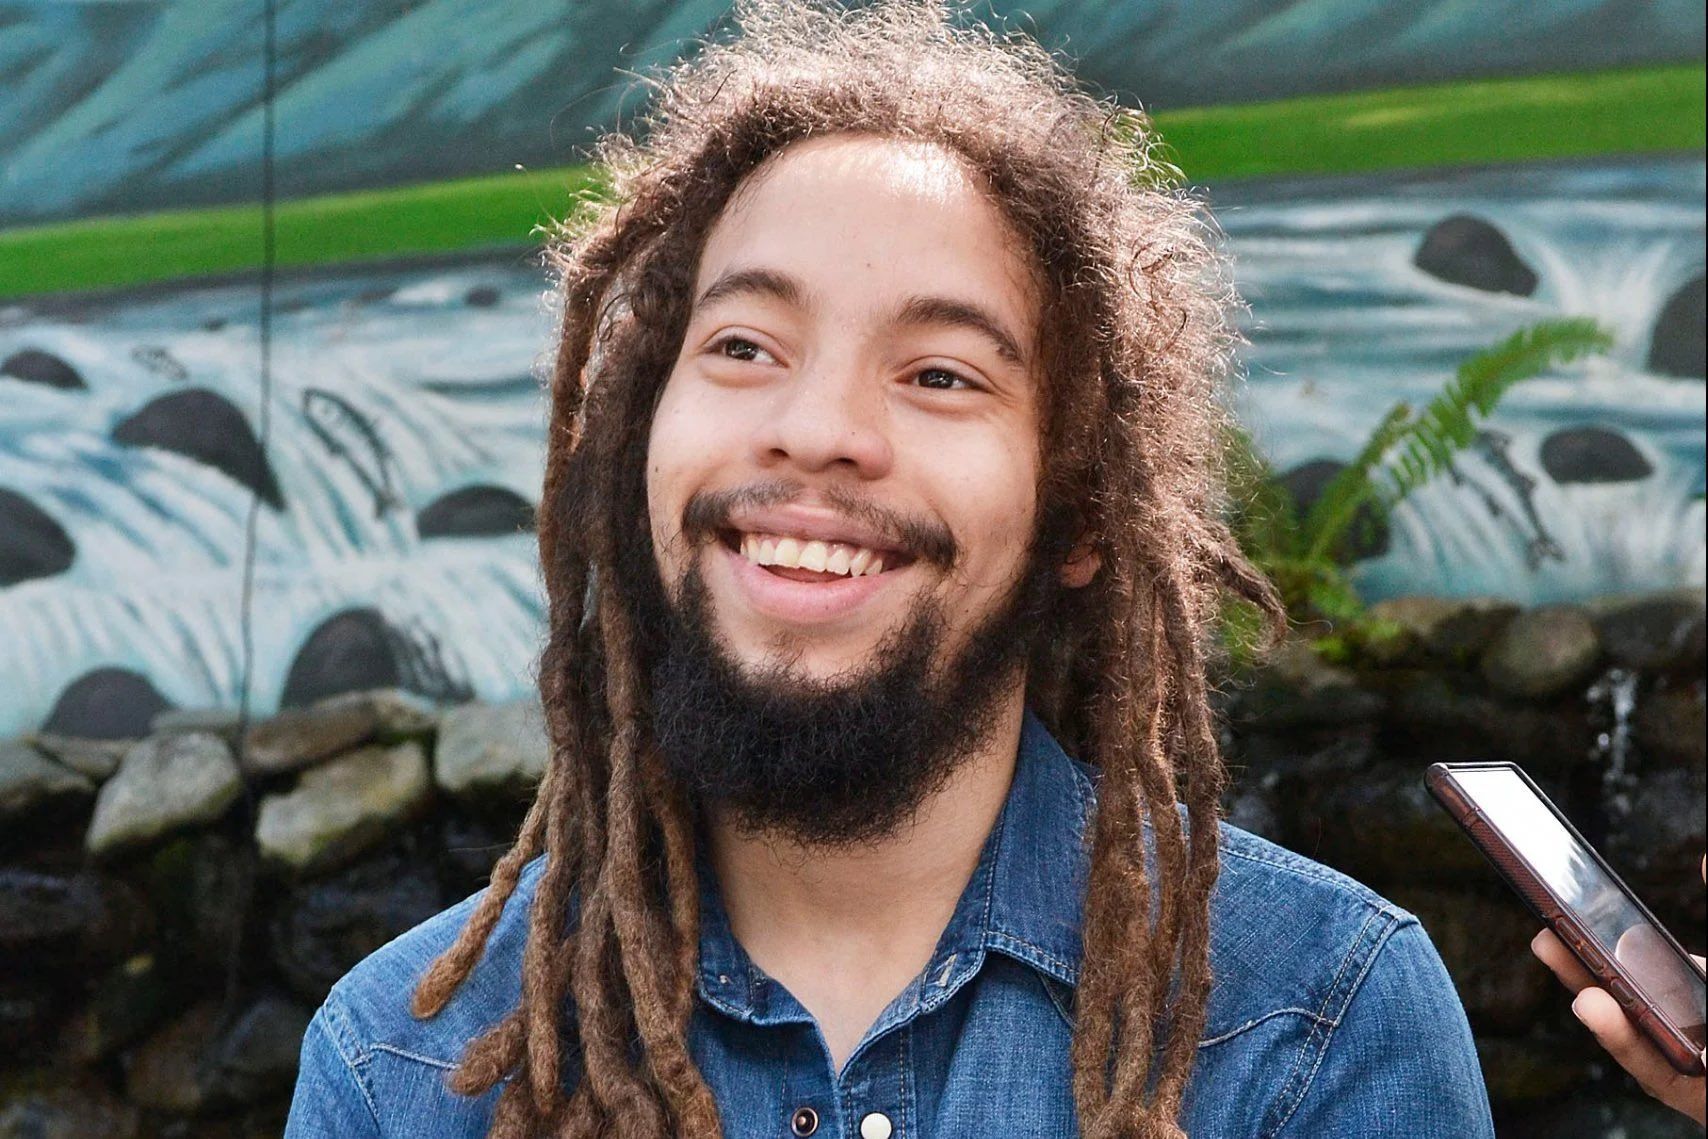 Who was Jo Mersa Marley? Reggae legend Bob Marley’s grandson dies aged 31